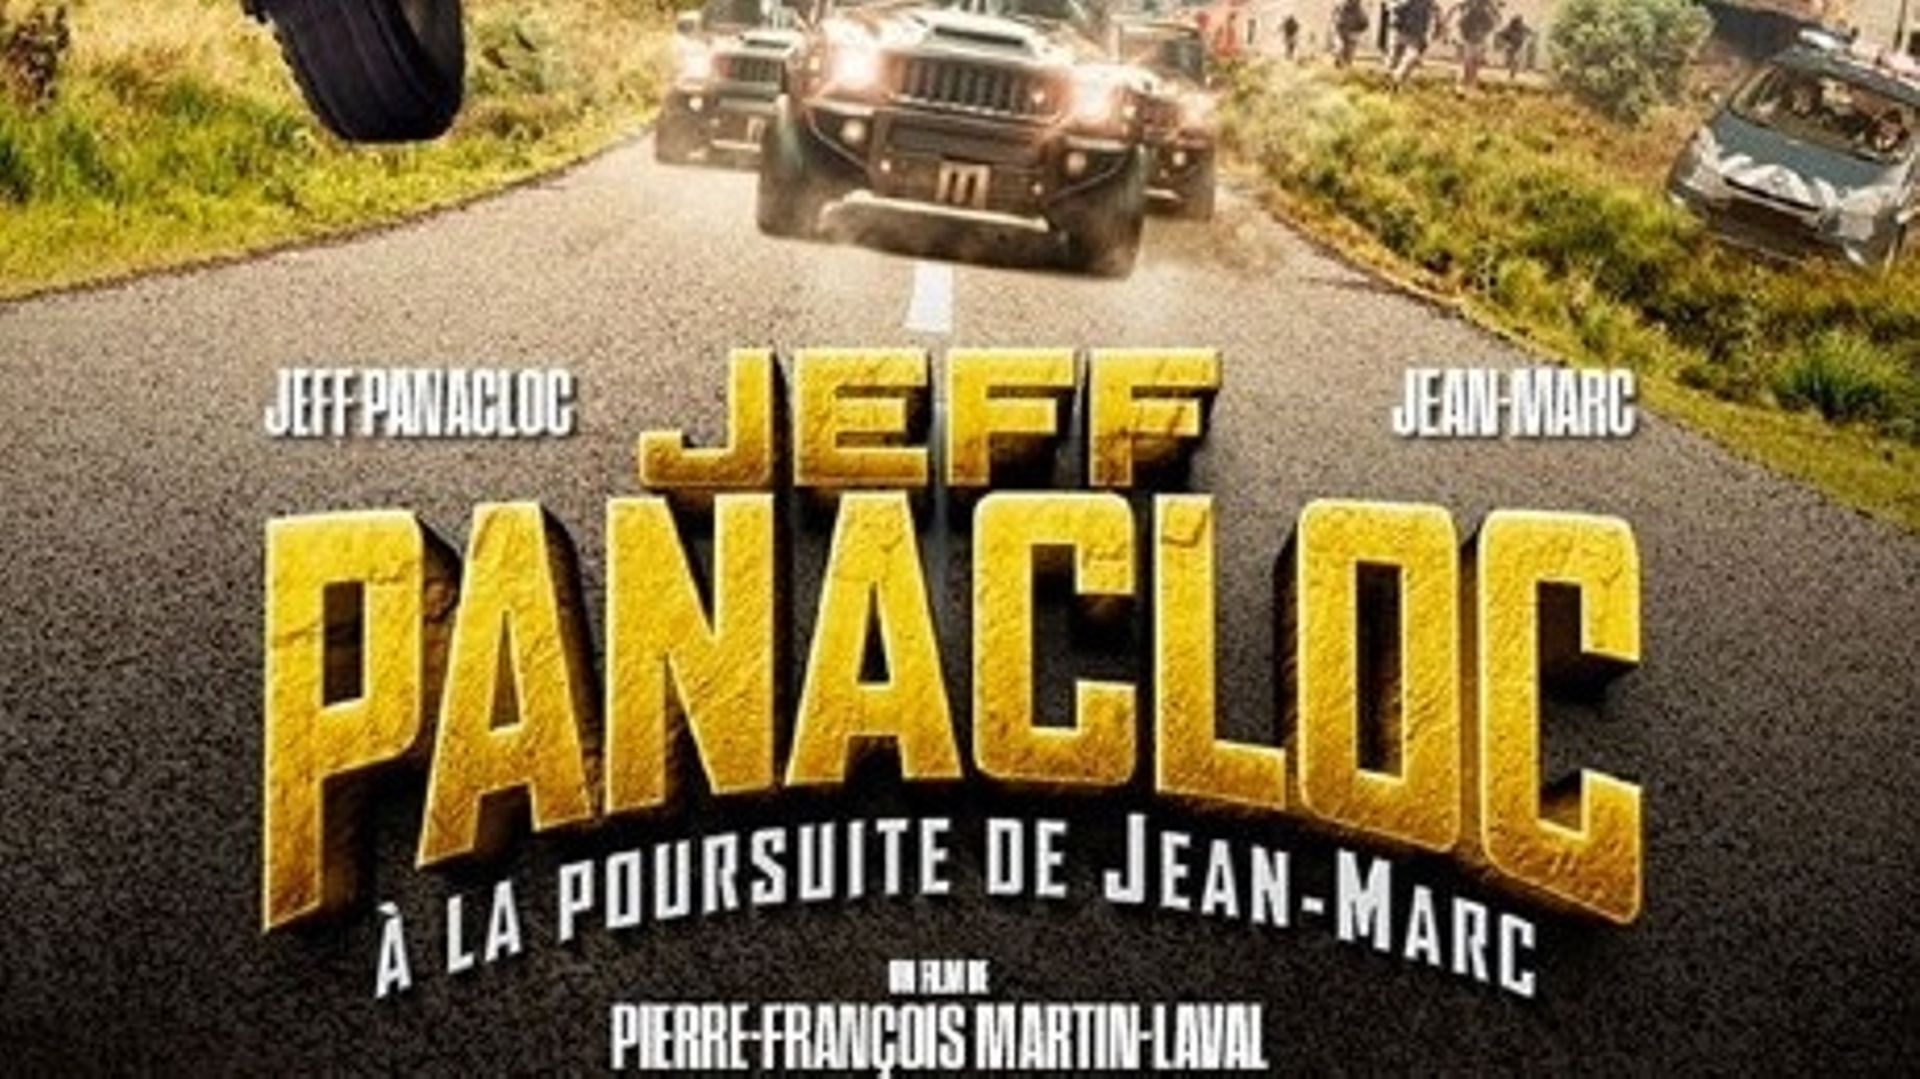 Jeff Panacloc : à la poursuite de Jean-Marc de Pierre-François